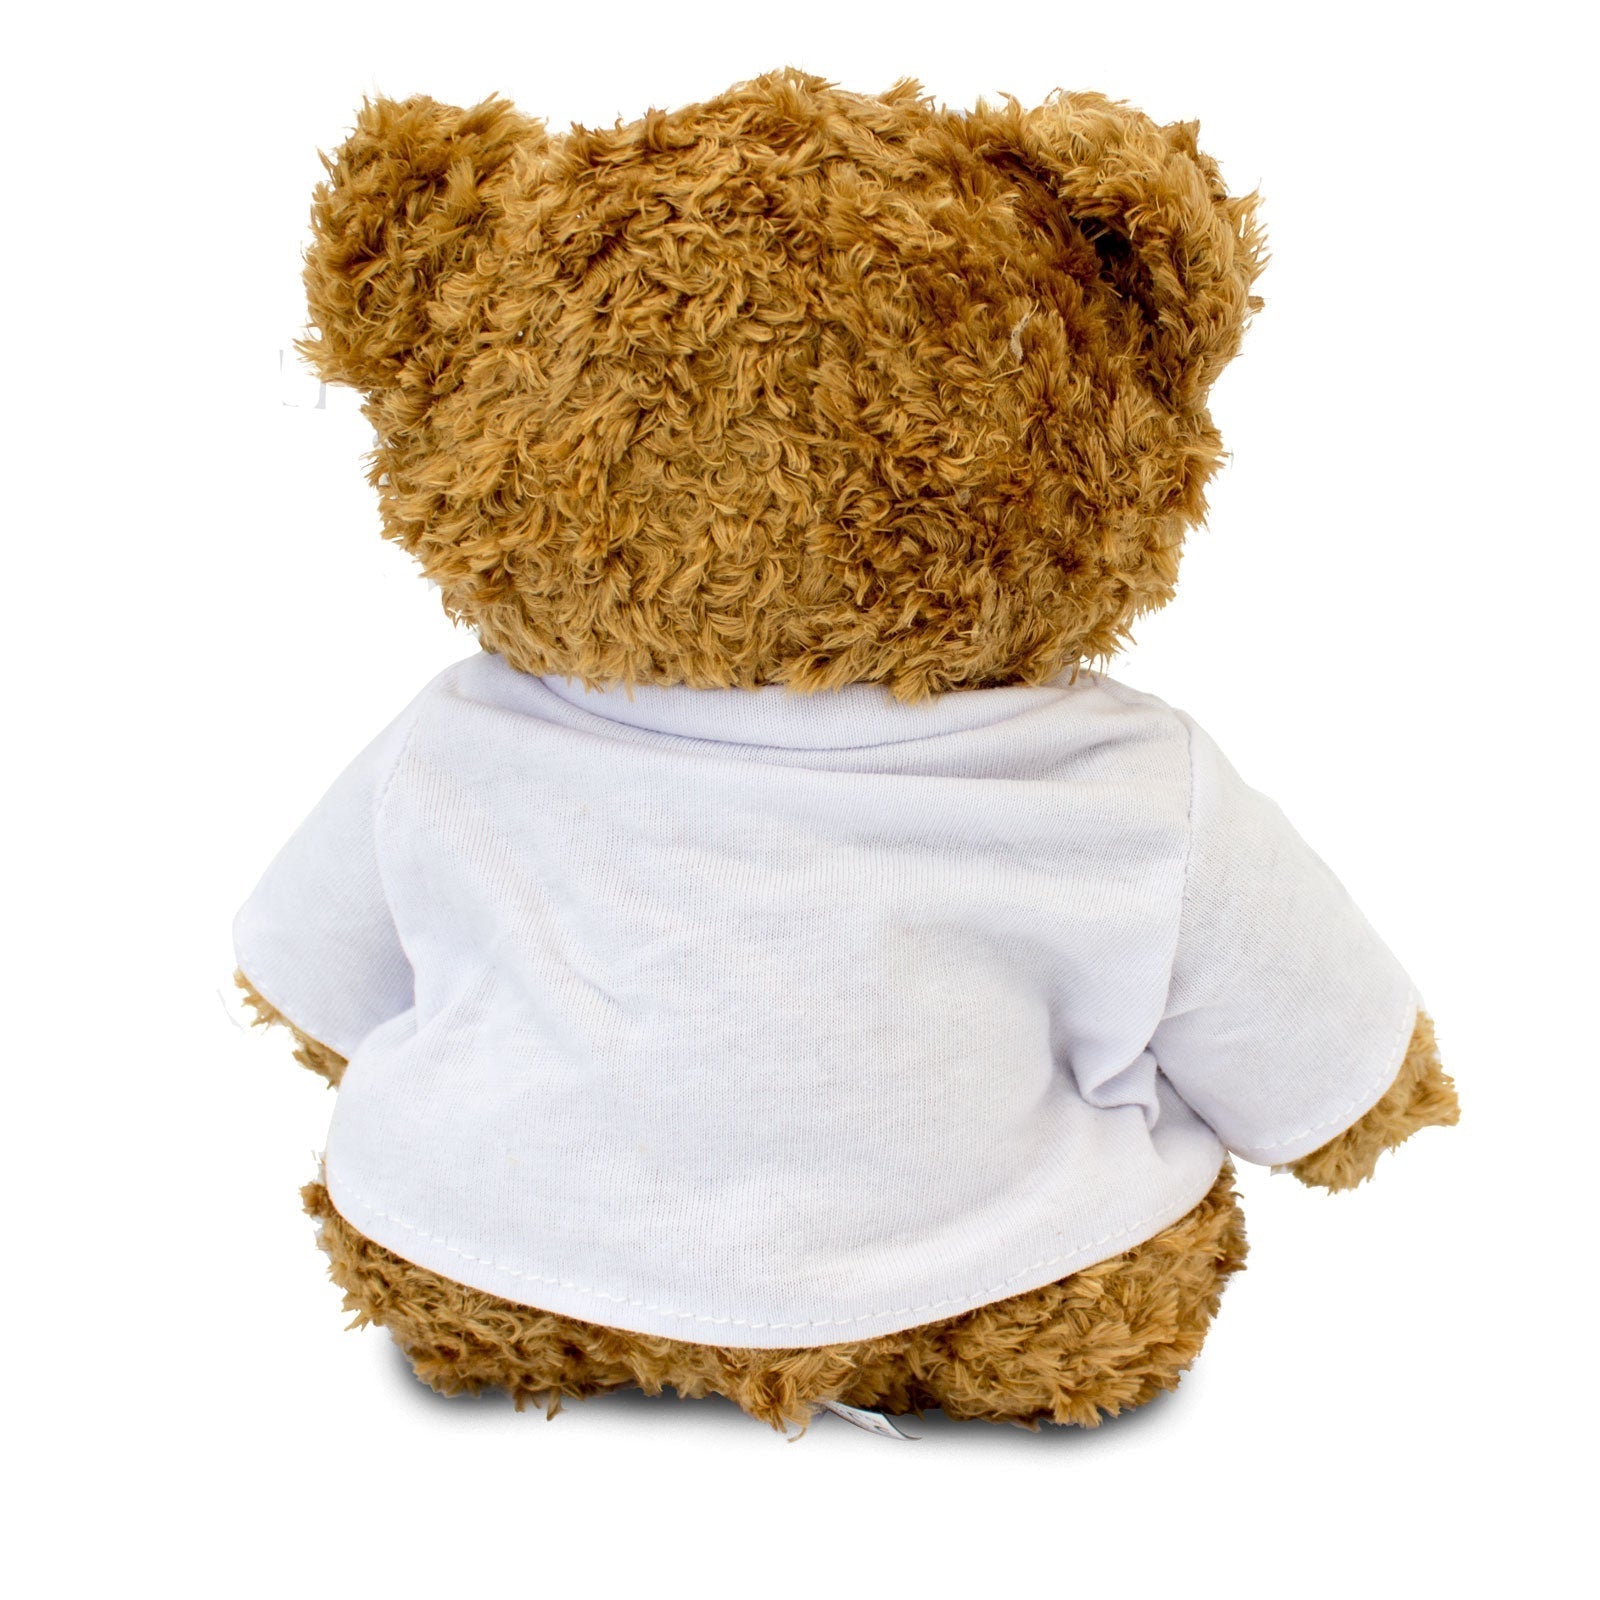 I Love Cuddles - Teddy Bear